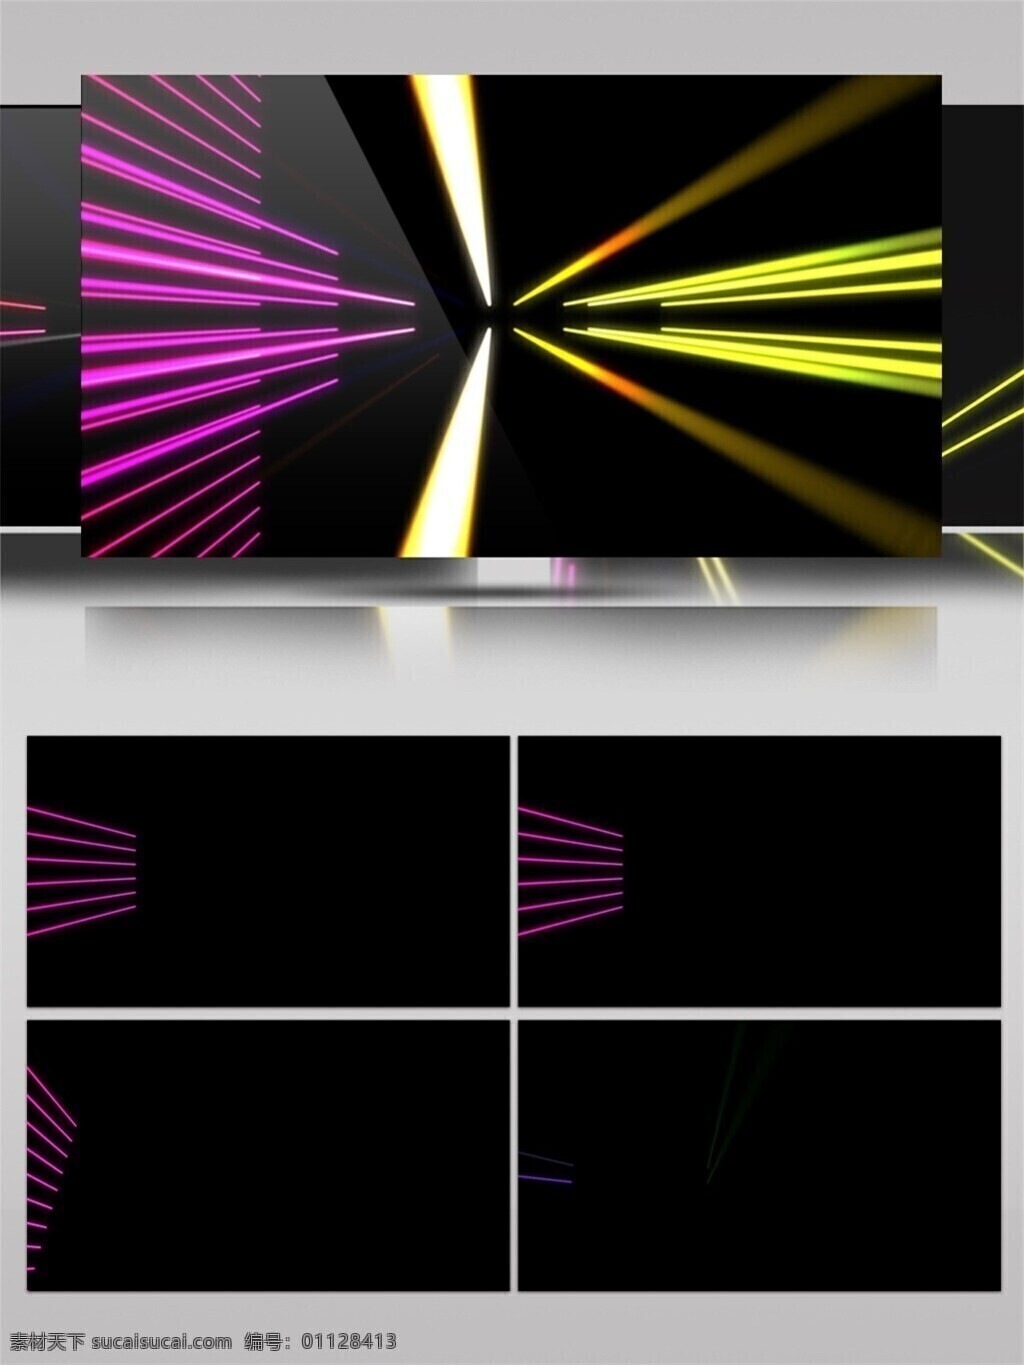 紫色 迷幻 光束 视频 光斑散射 激光 梦幻 视觉享受 手机壁纸